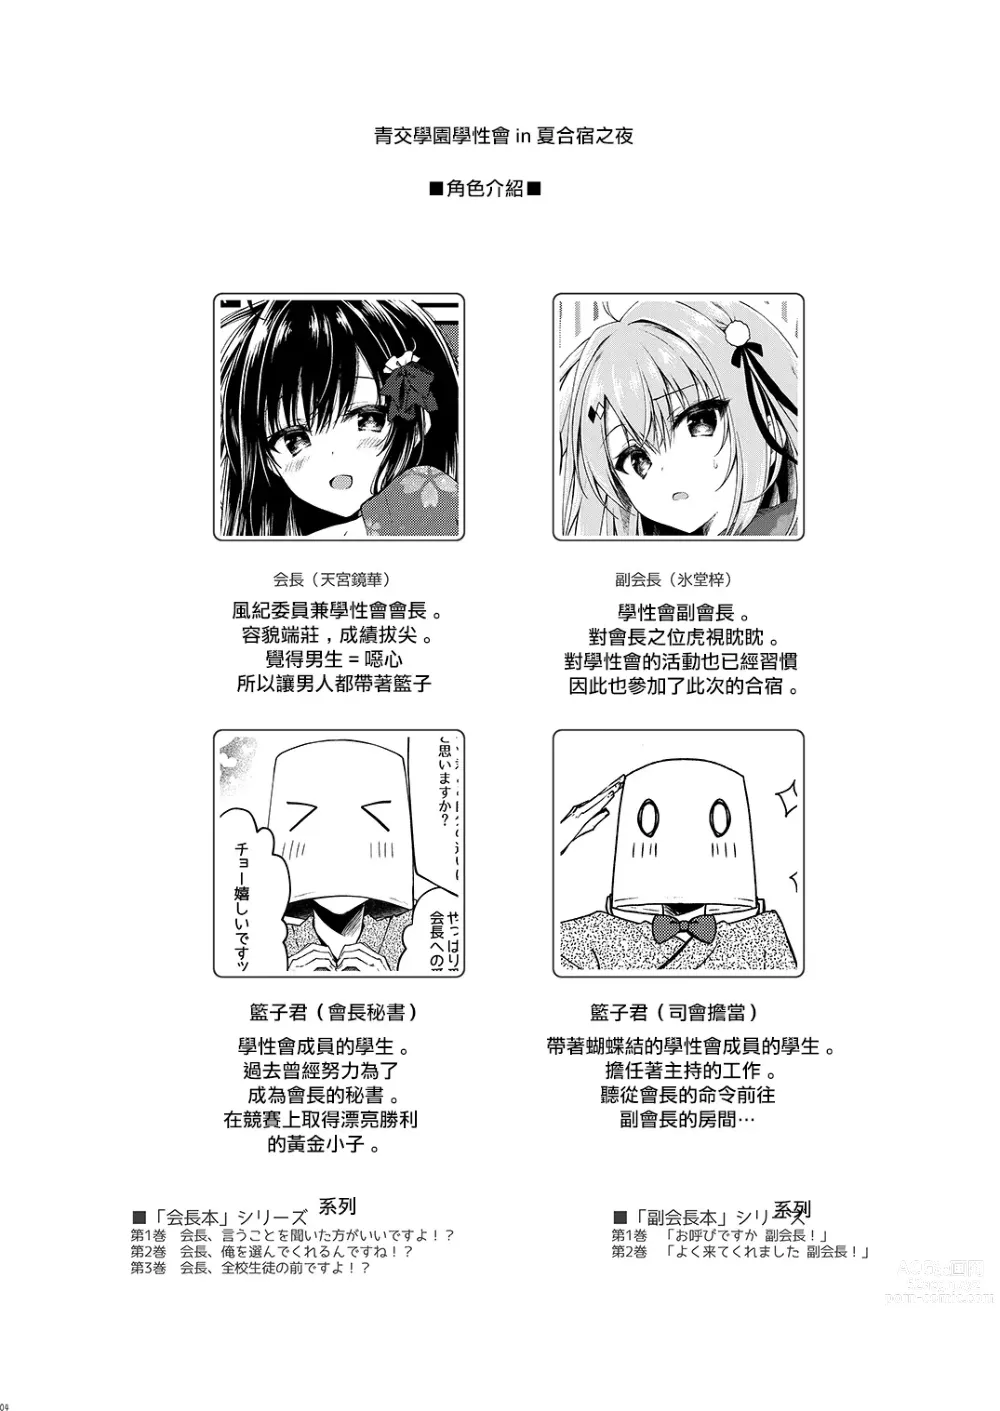 Page 4 of doujinshi Seikou Gakuen Seitokai in Natsugasshuku no Yoru